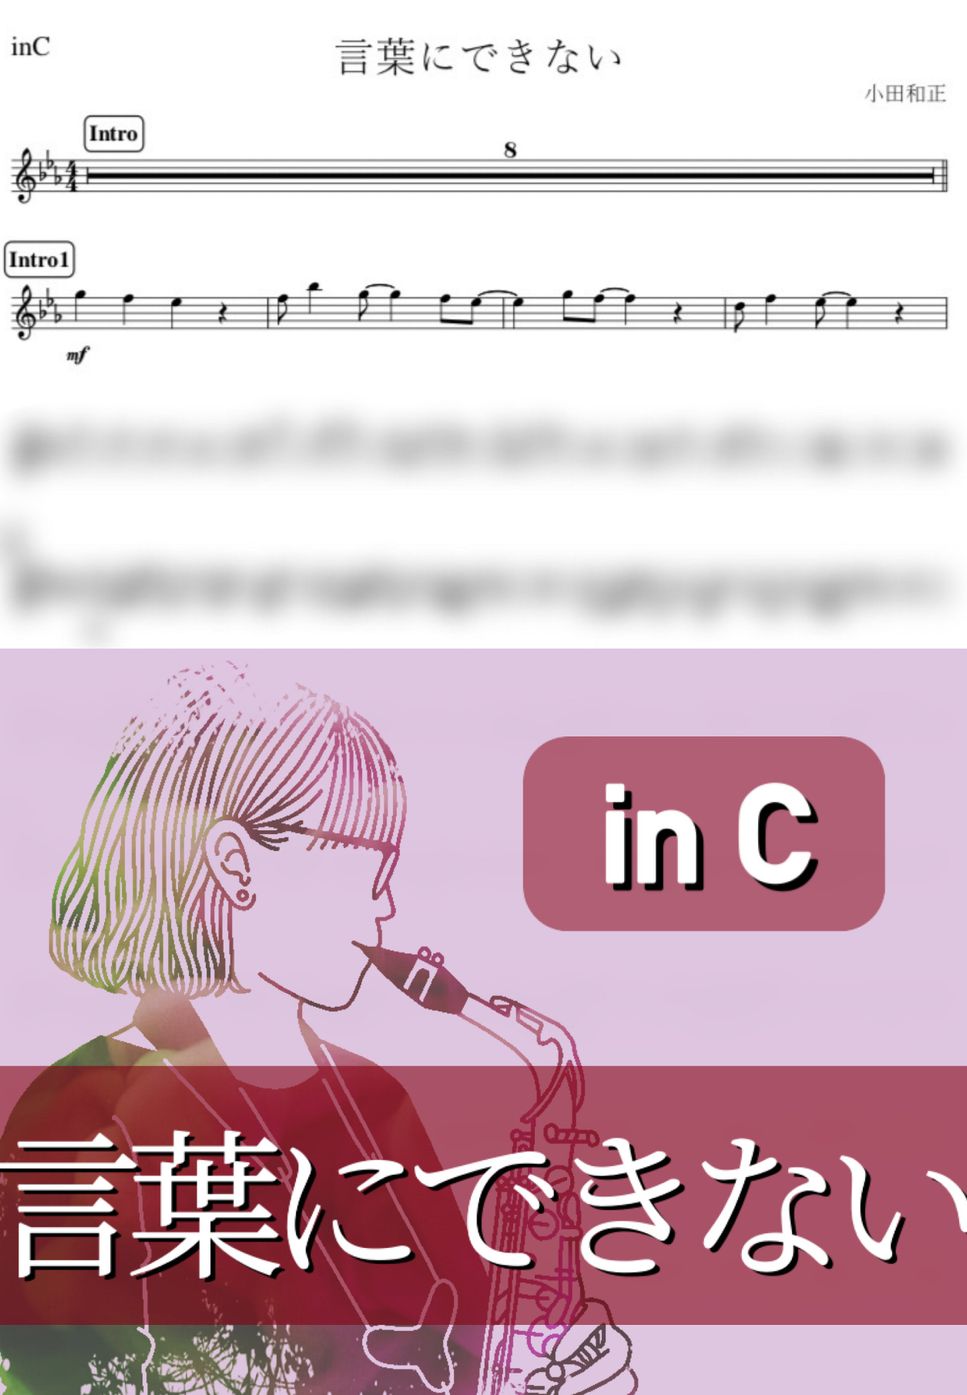 小田和正 - 言葉にできない (C) by kanamusic